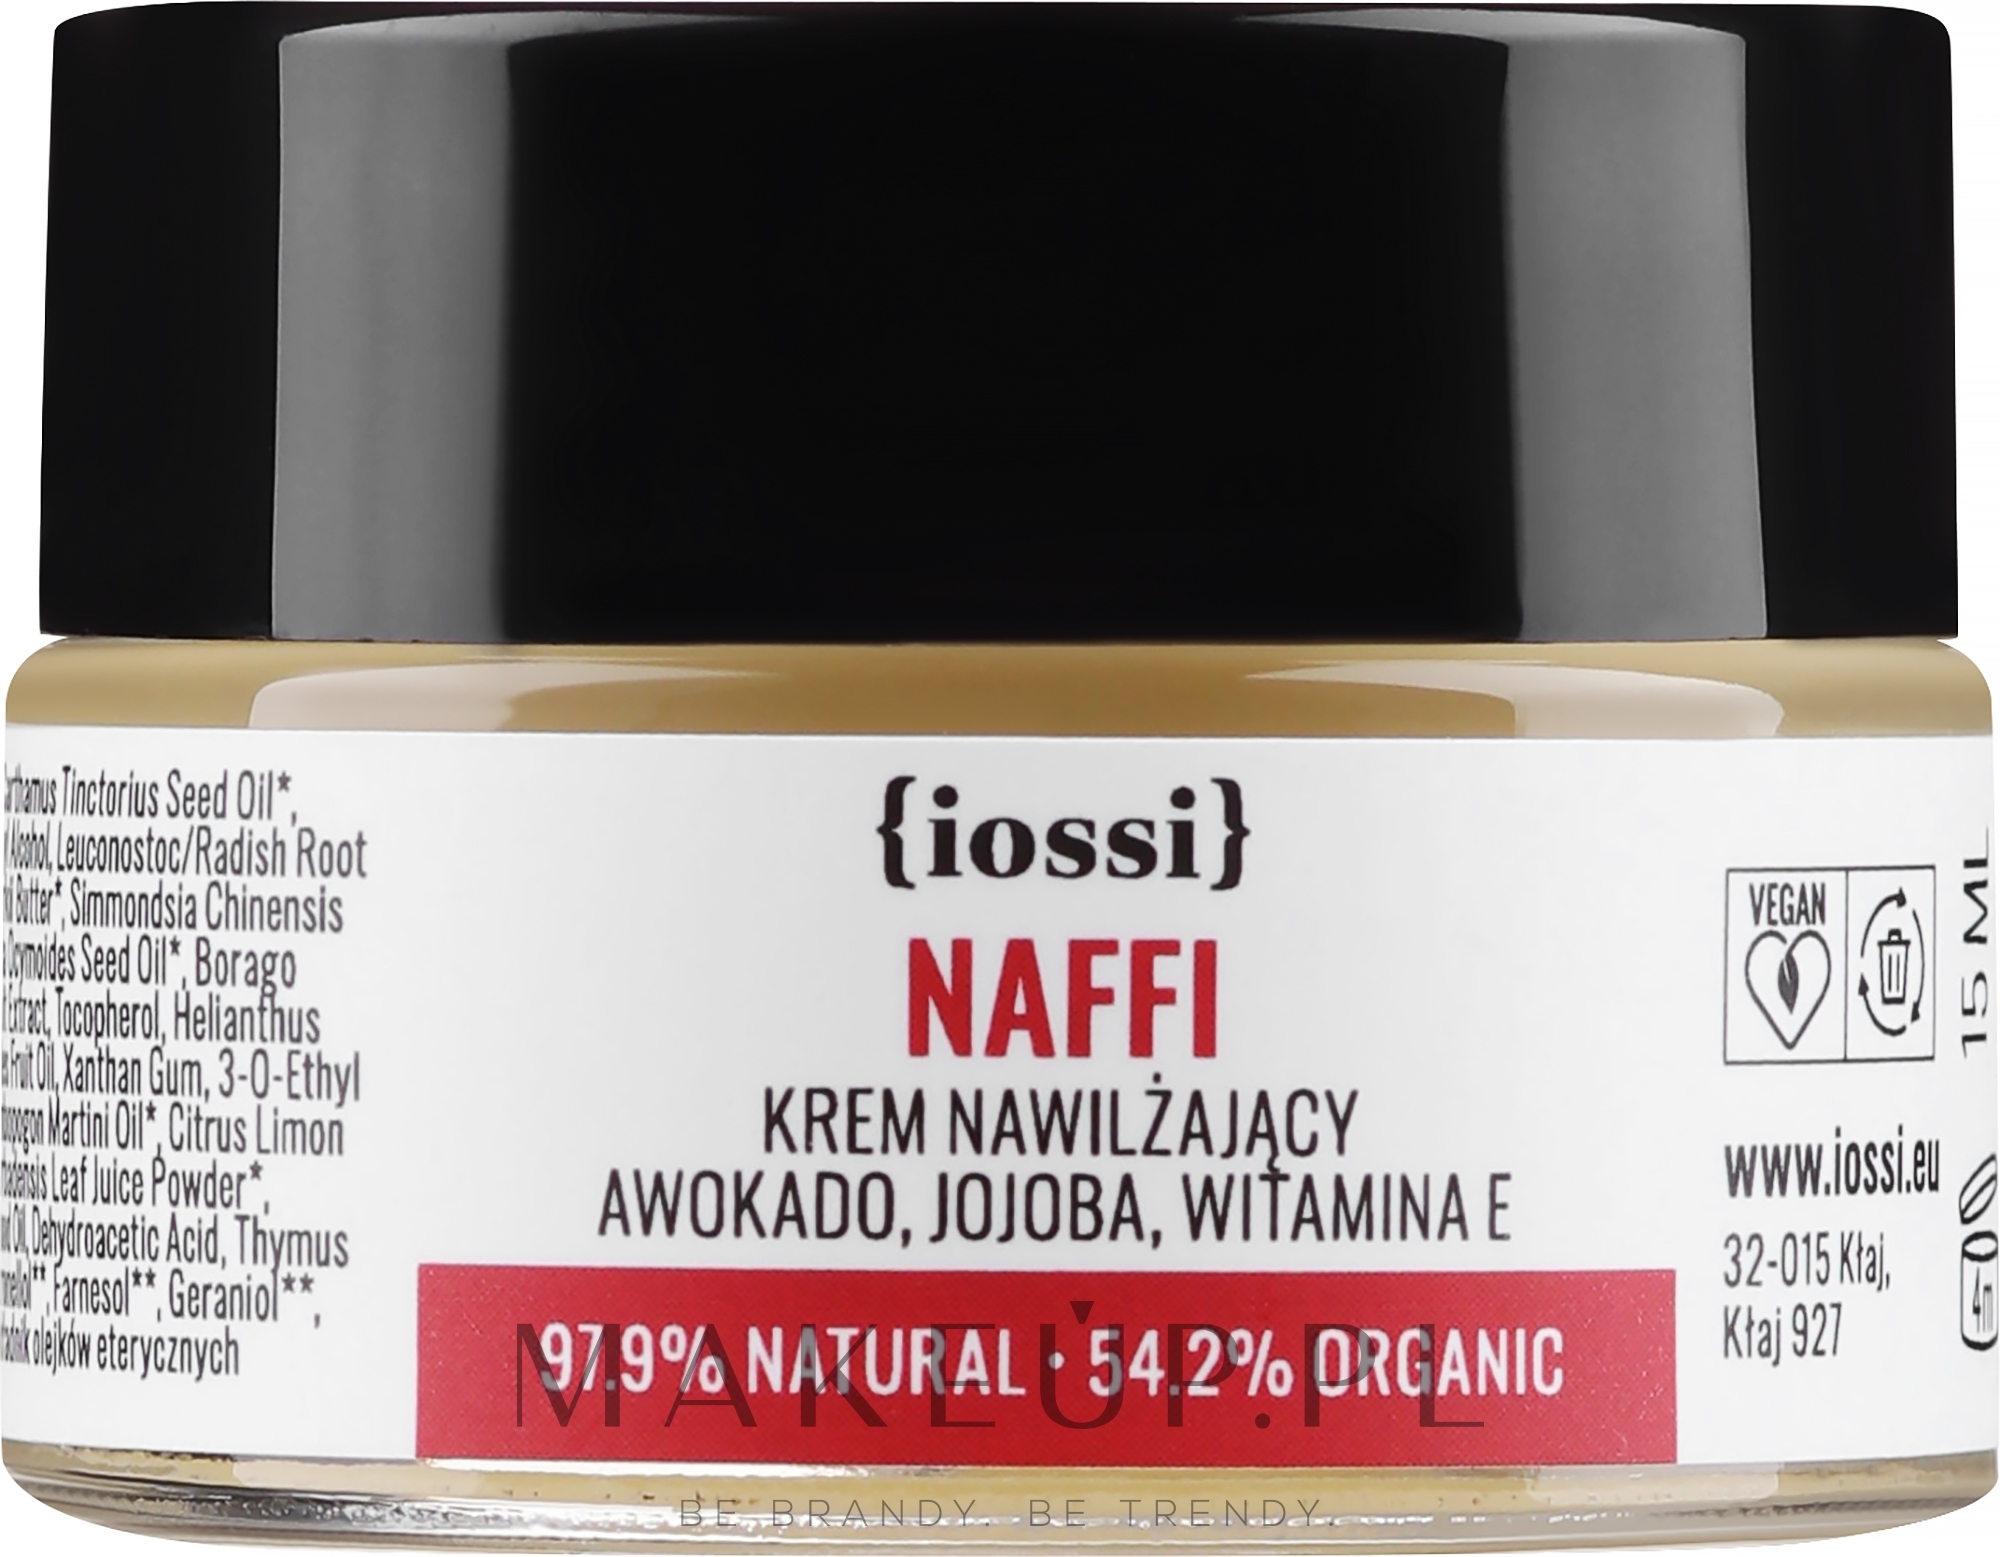 Krem nawilżający Awokado i jojoba - Iossi NAFFI (miniprodukt) — Zdjęcie 15 ml